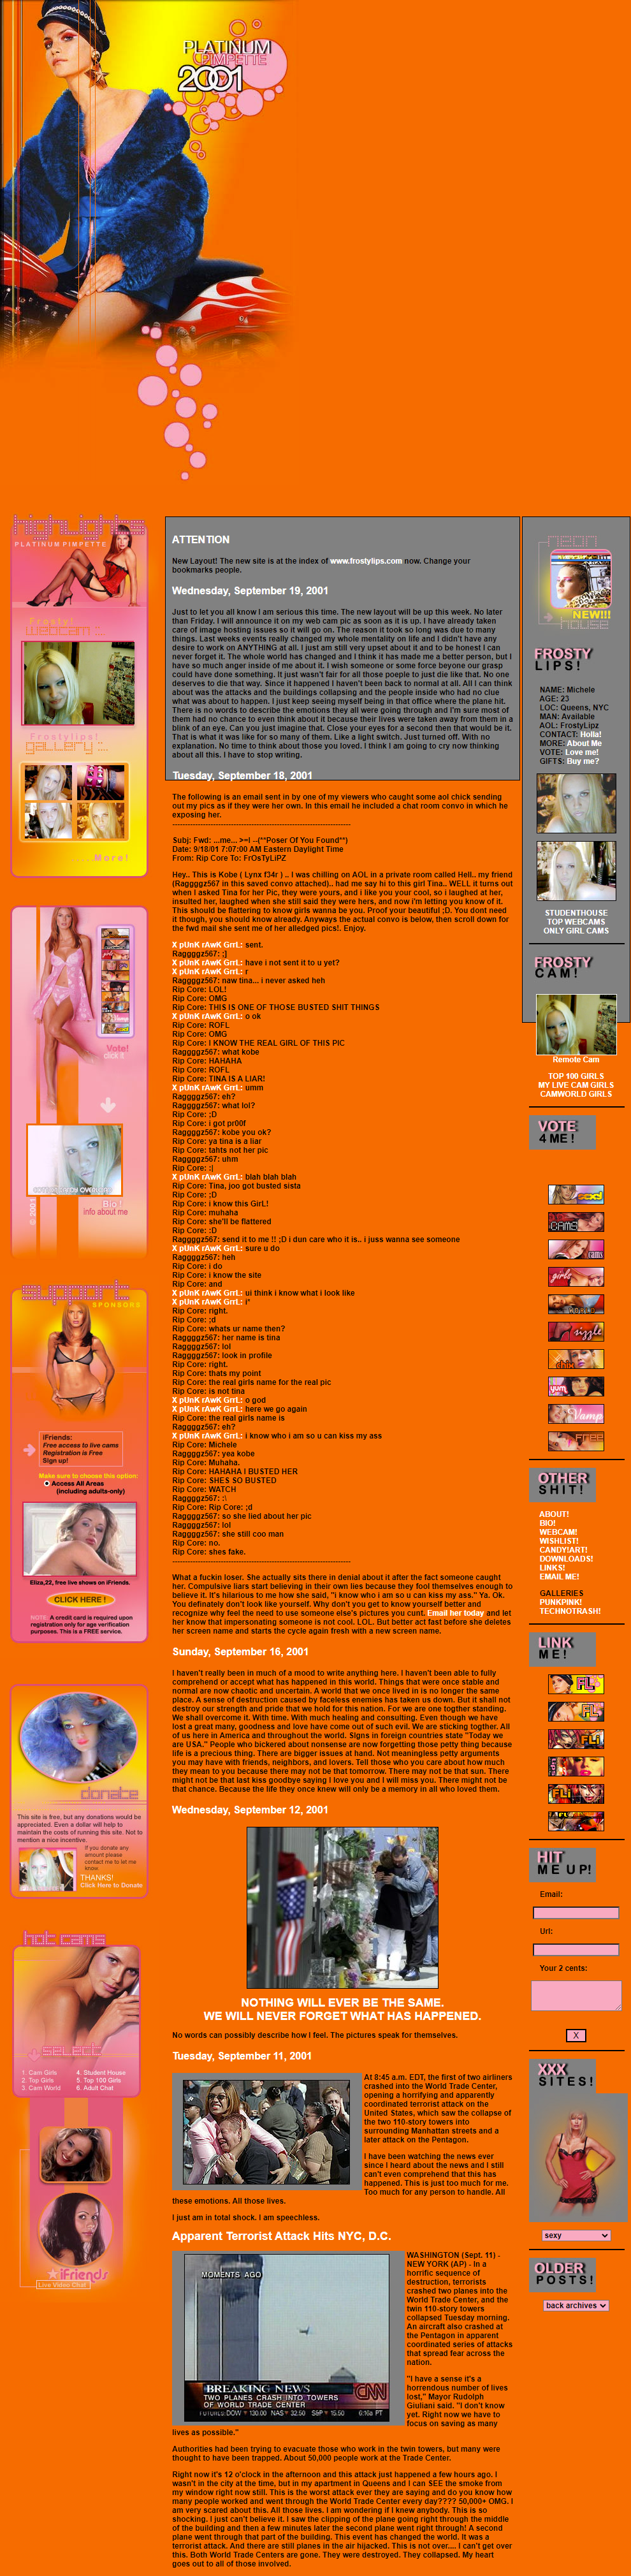 Frostylips website in 2001